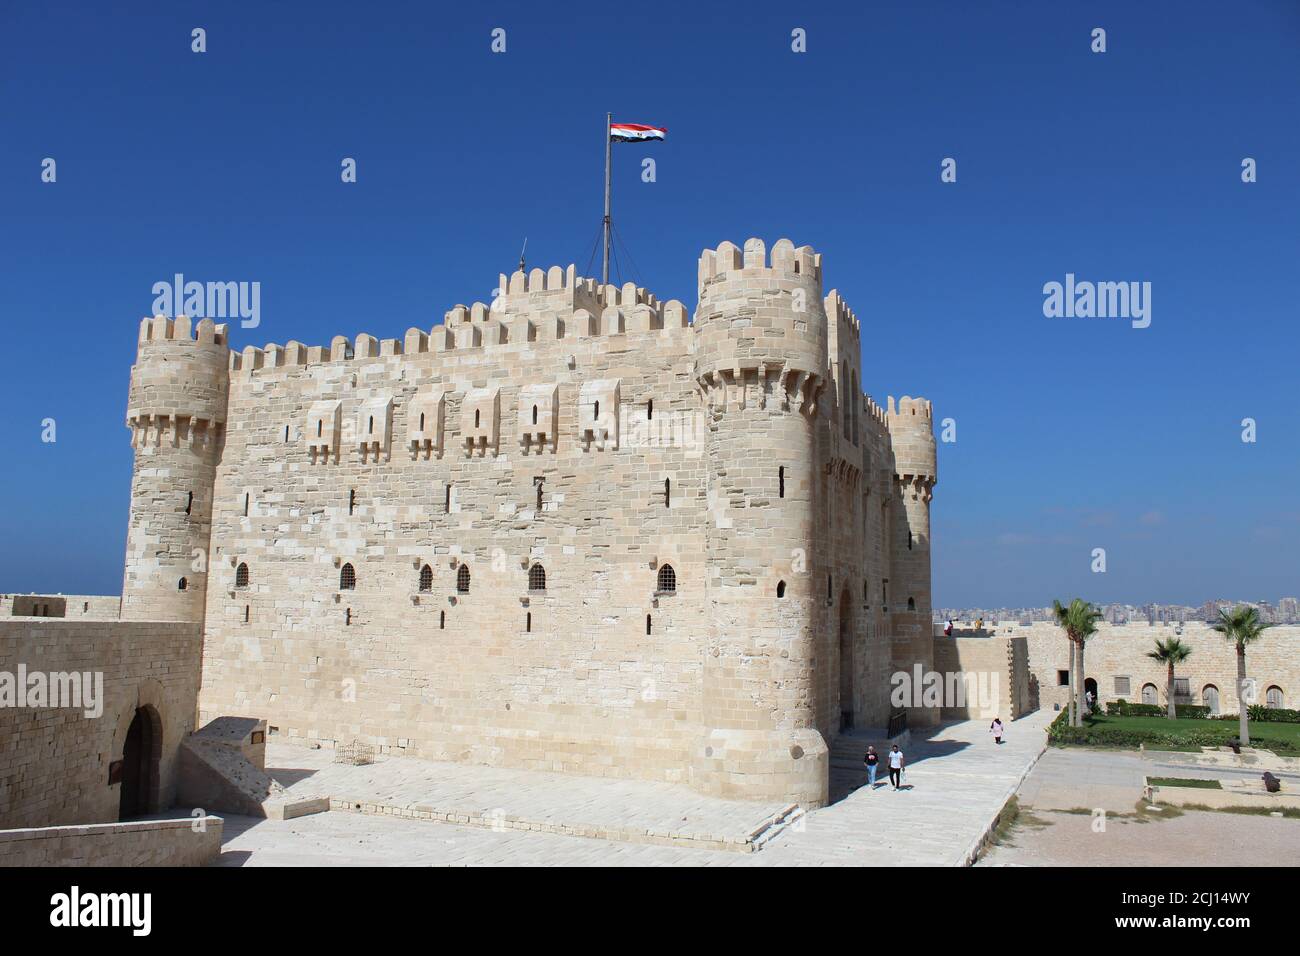 Vista frontale della Cittadella di Qaitbay Qaitbay Fort, è una fortezza difensiva del 15 ° secolo situata sulla costa mediterranea del mare. Castello, porto Foto Stock